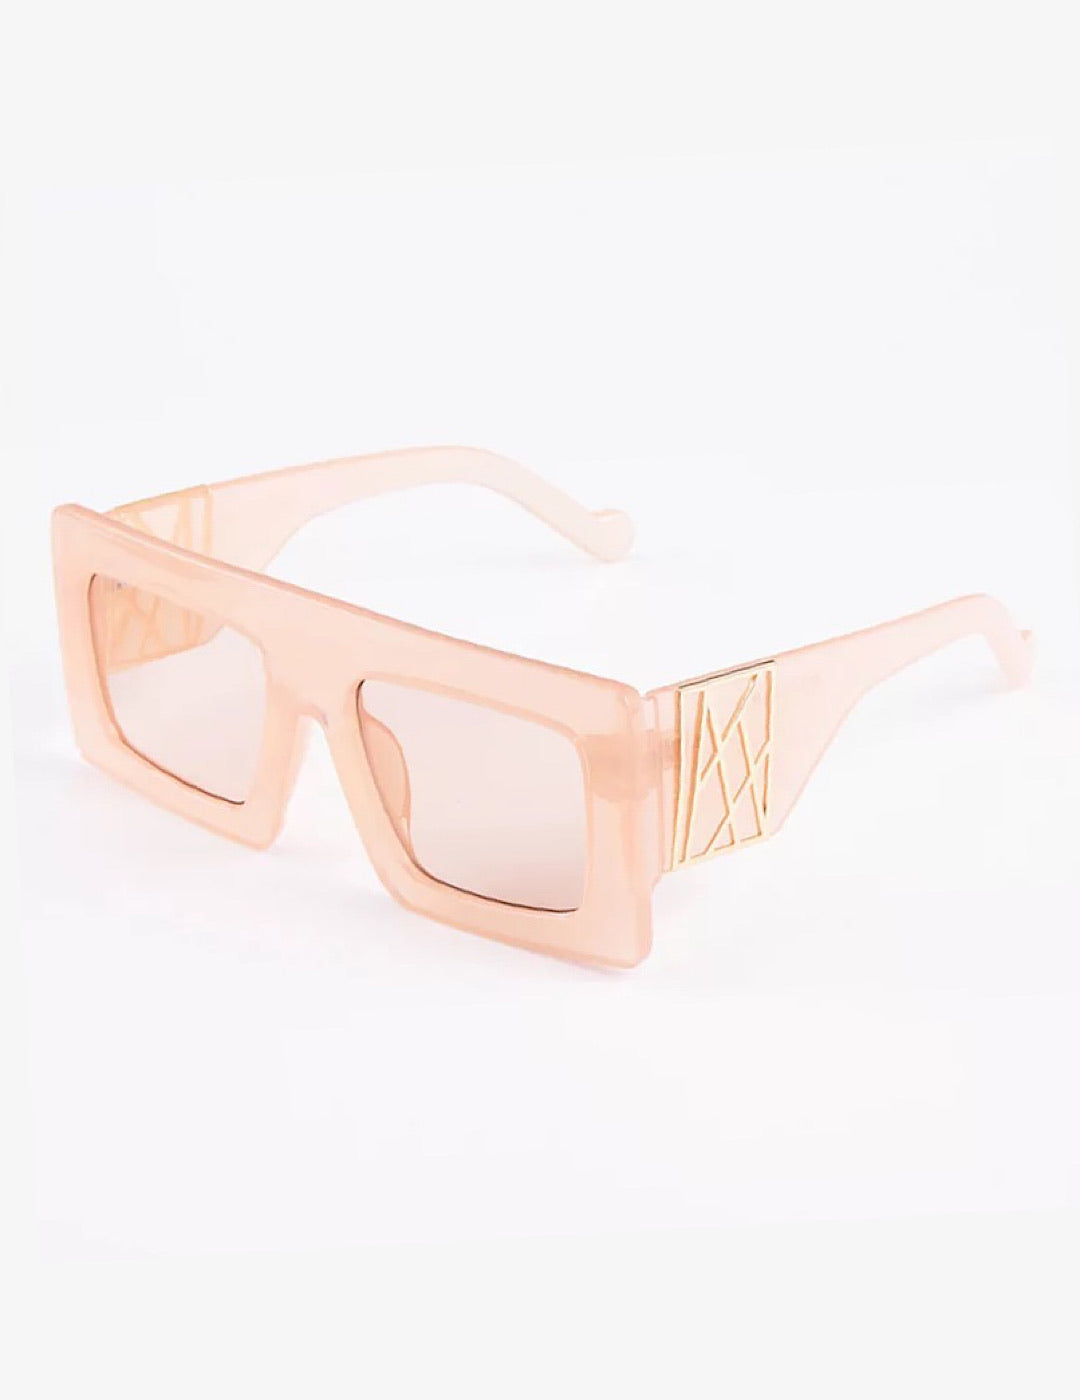 “Blush” Sasha Square Gold Detail Sunglasses - SLAYBLÉU